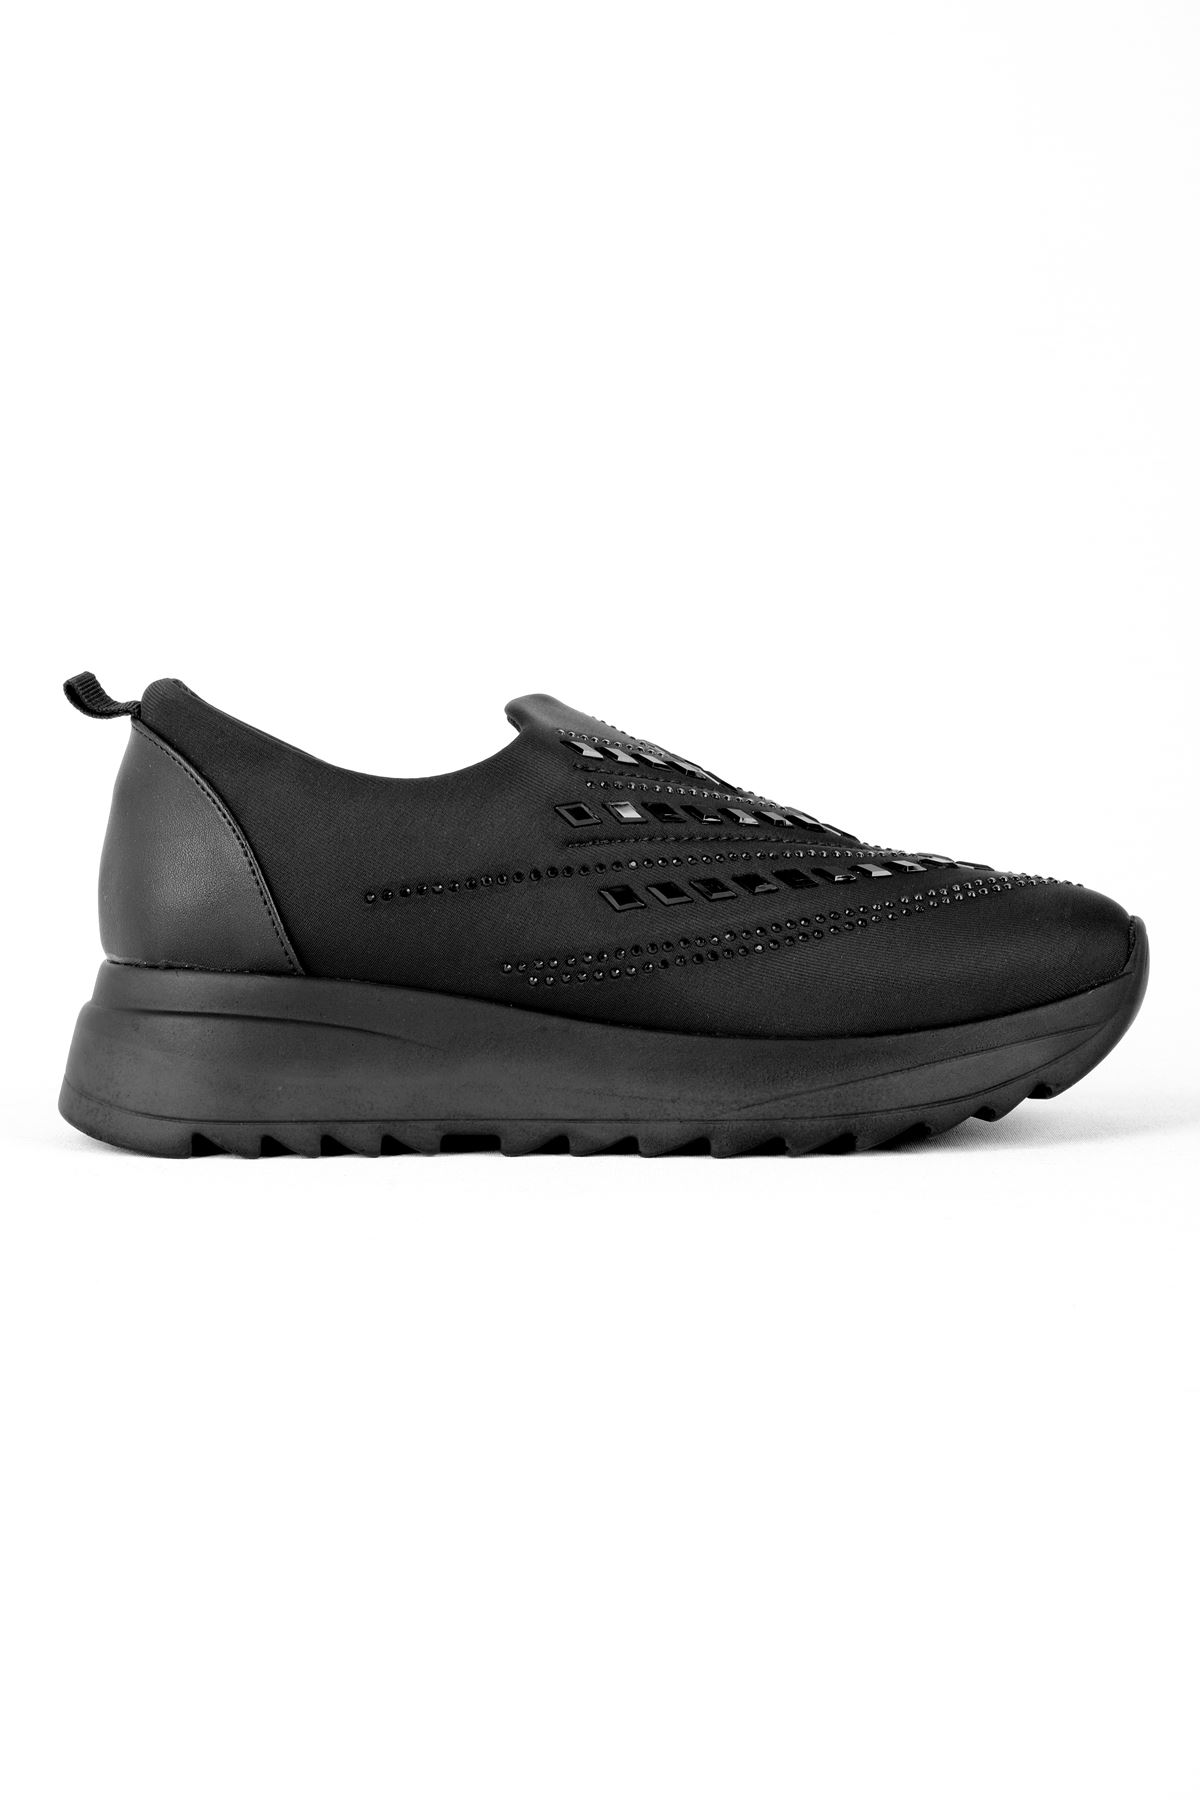 Broom Kadın Spor Ayakkabı Dalgıç Kumaş Kare Minik Taşlı-siyah